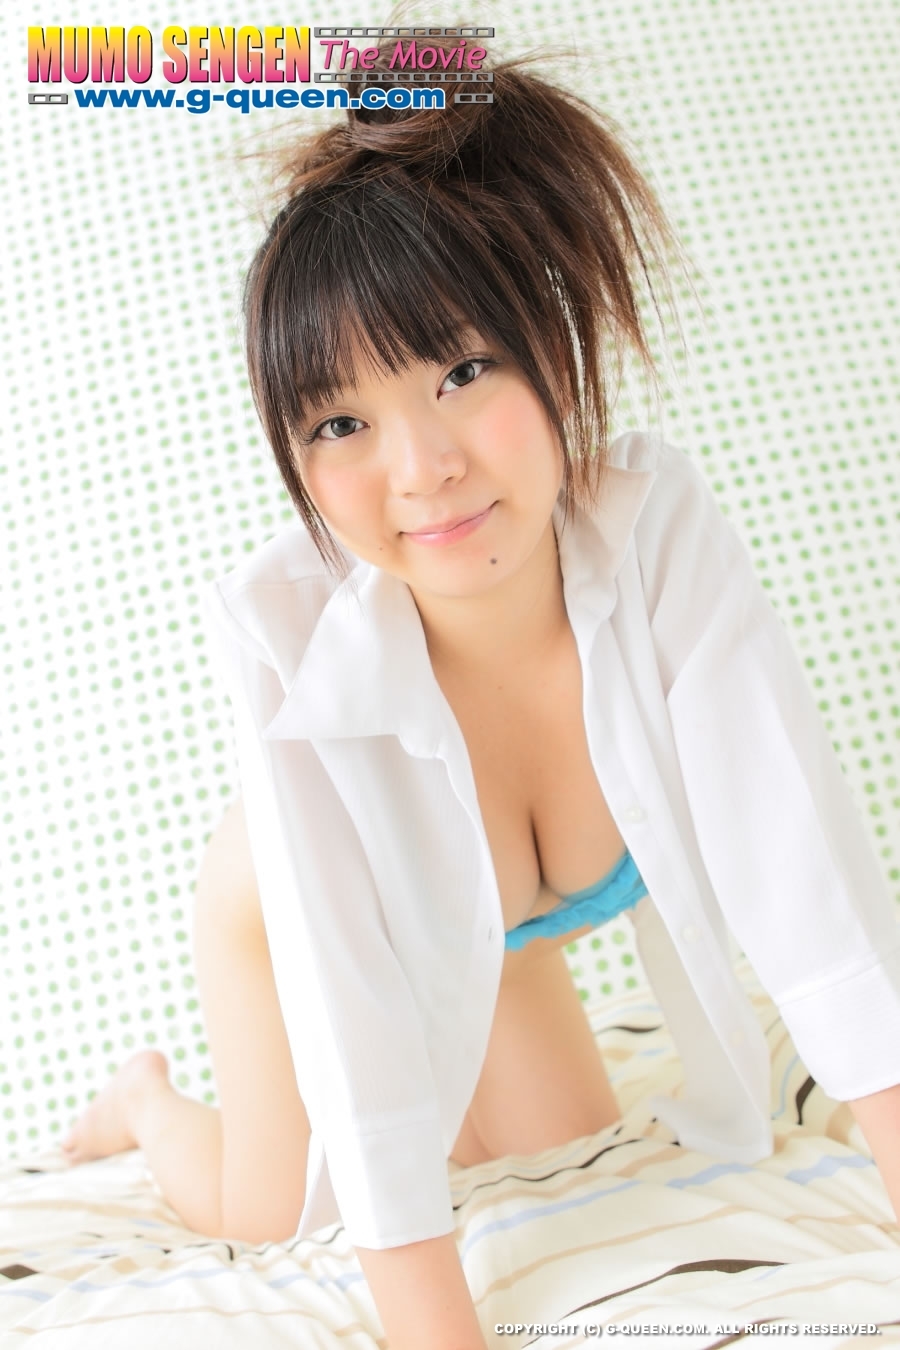 Busty Japanese teen in white dress changing into blue bikini - XXXonXXX - Pic 14